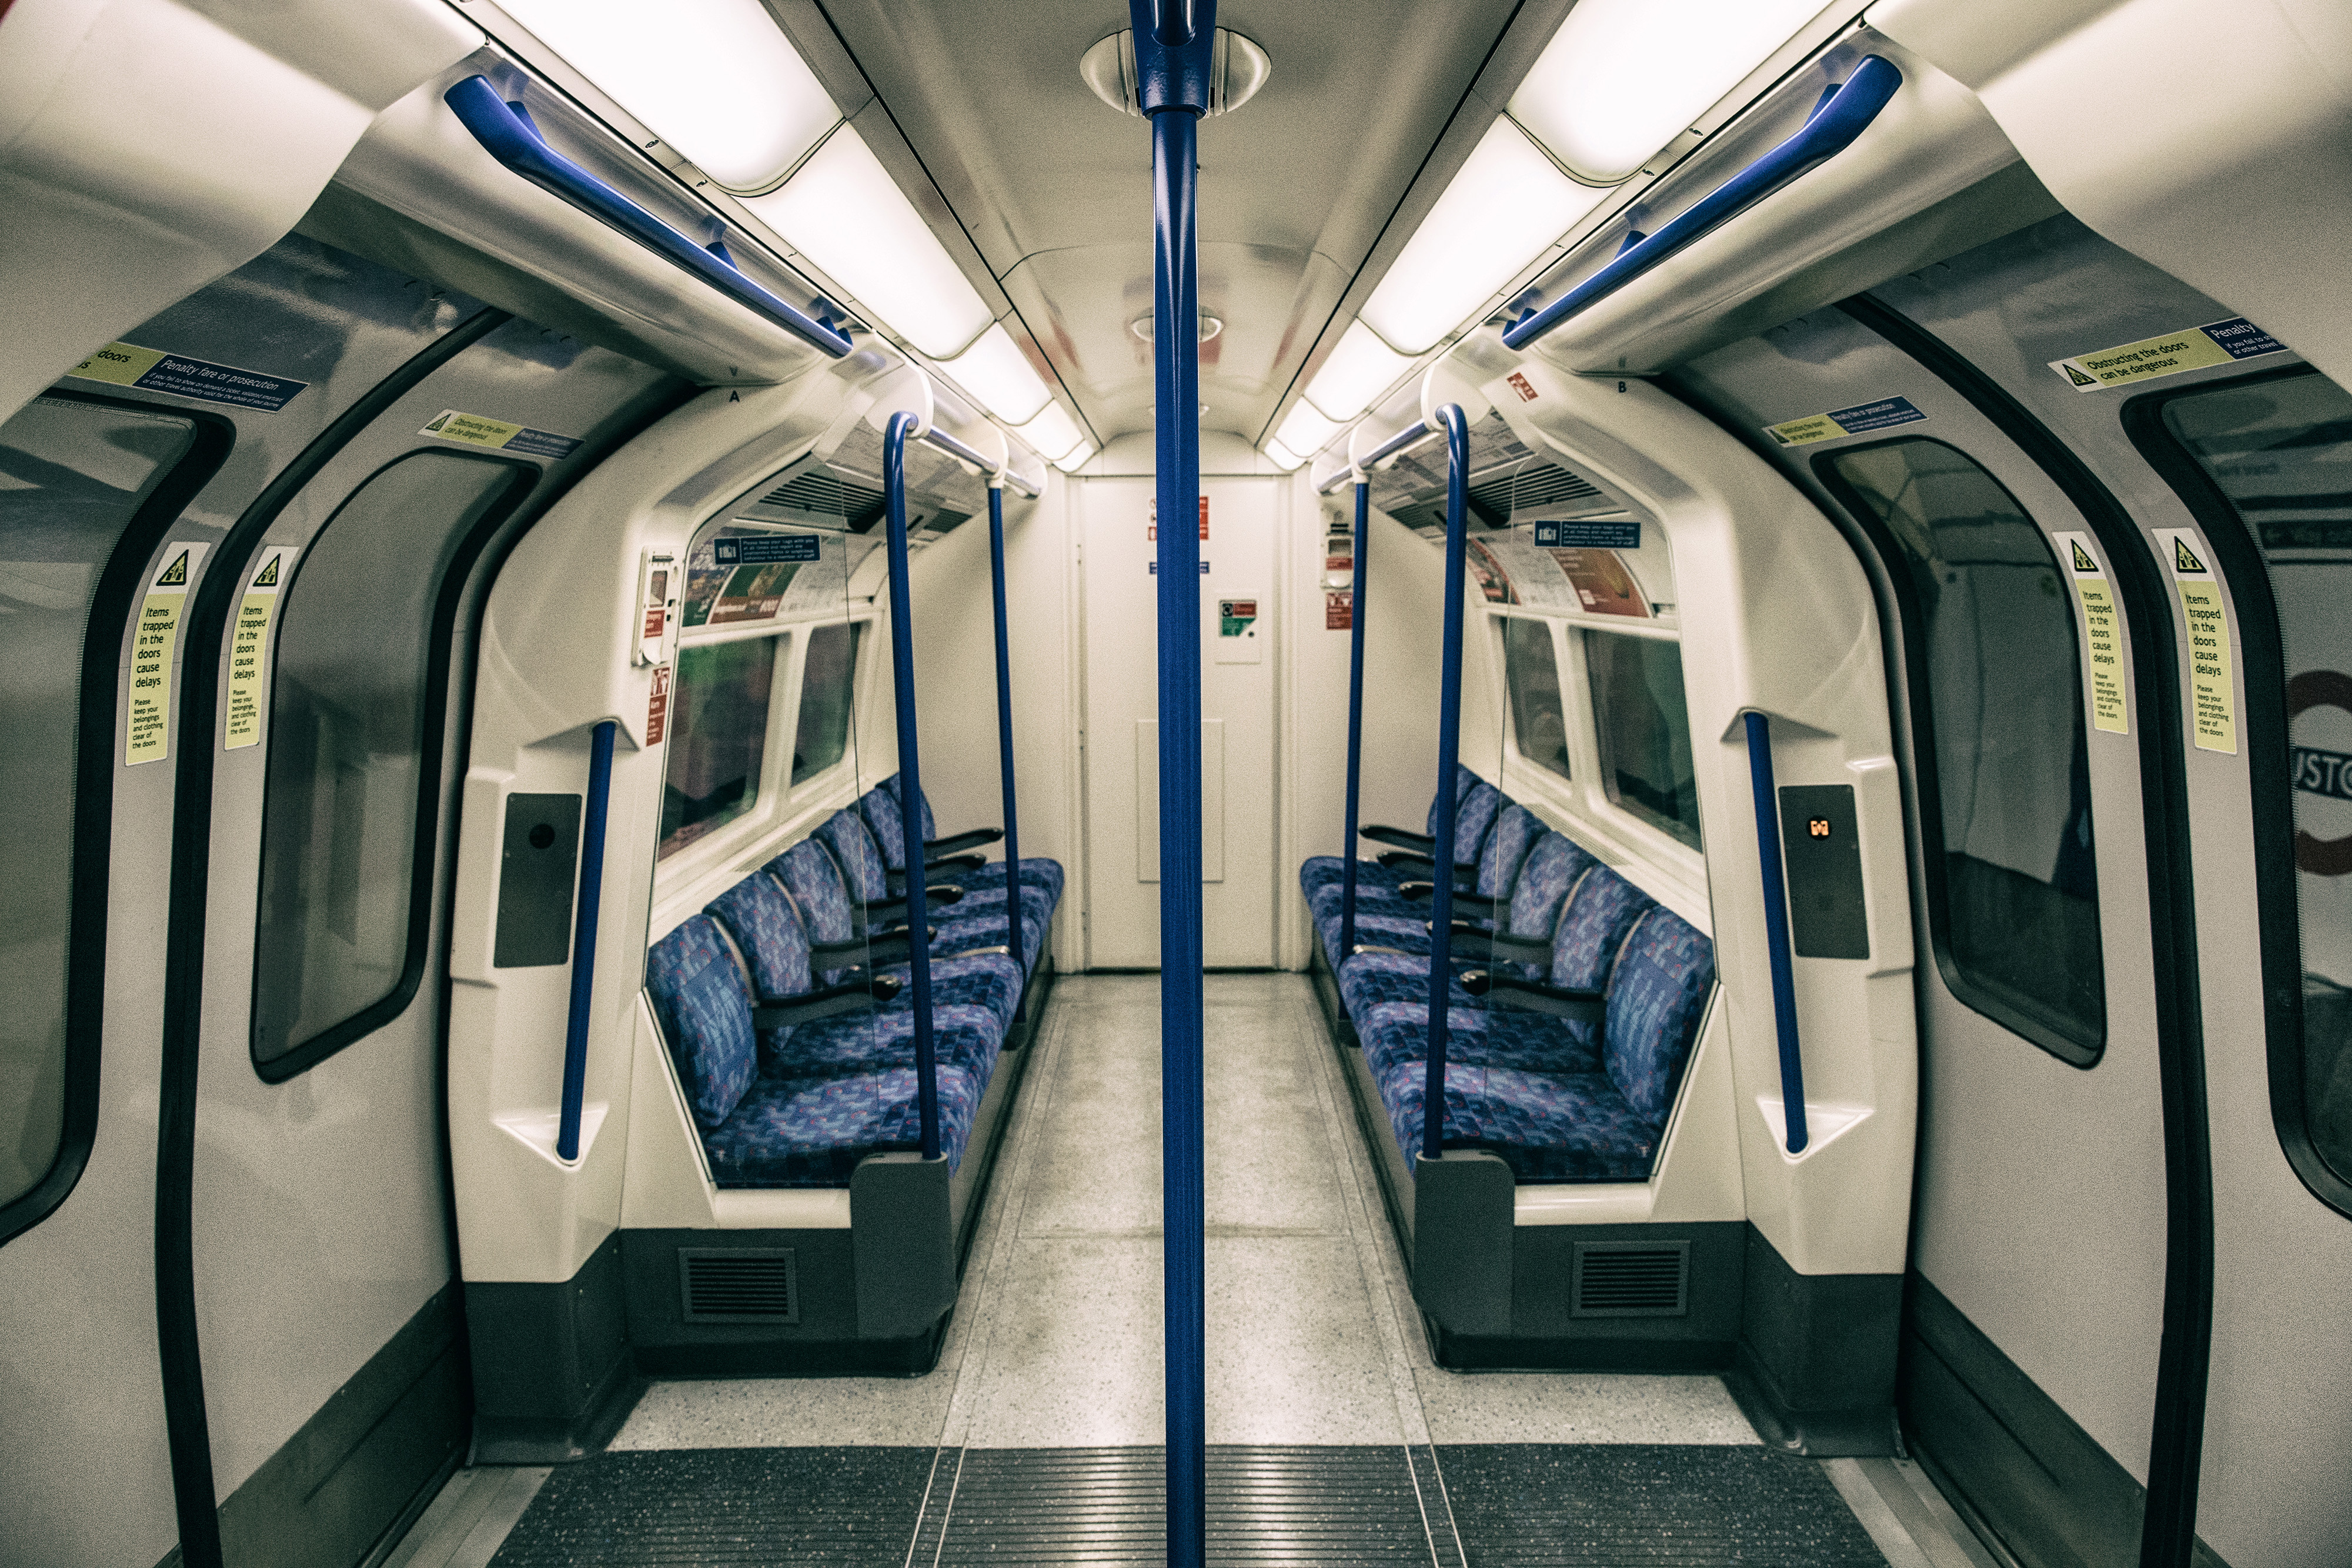 Kinh nghiệm đi tàu điện ngầm ở Anh - Tàu điện ngầm ở Anh